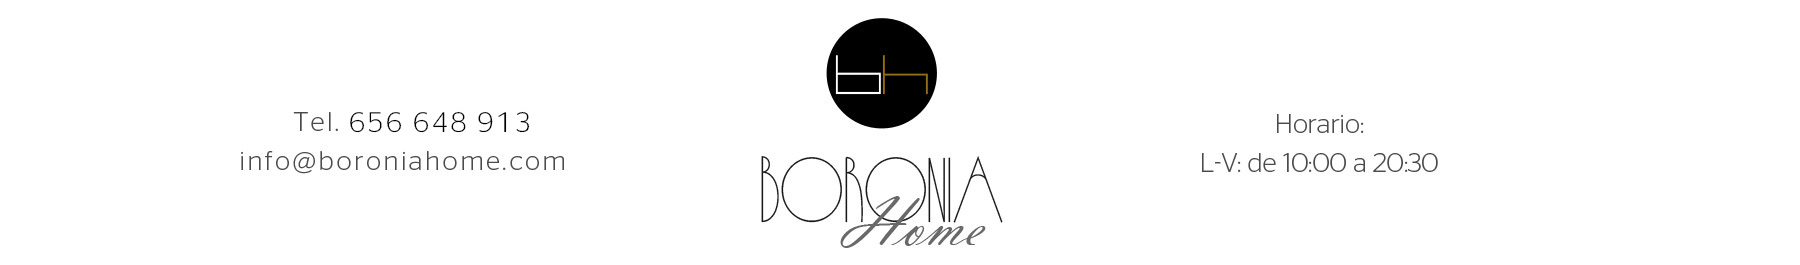 Boronia Home